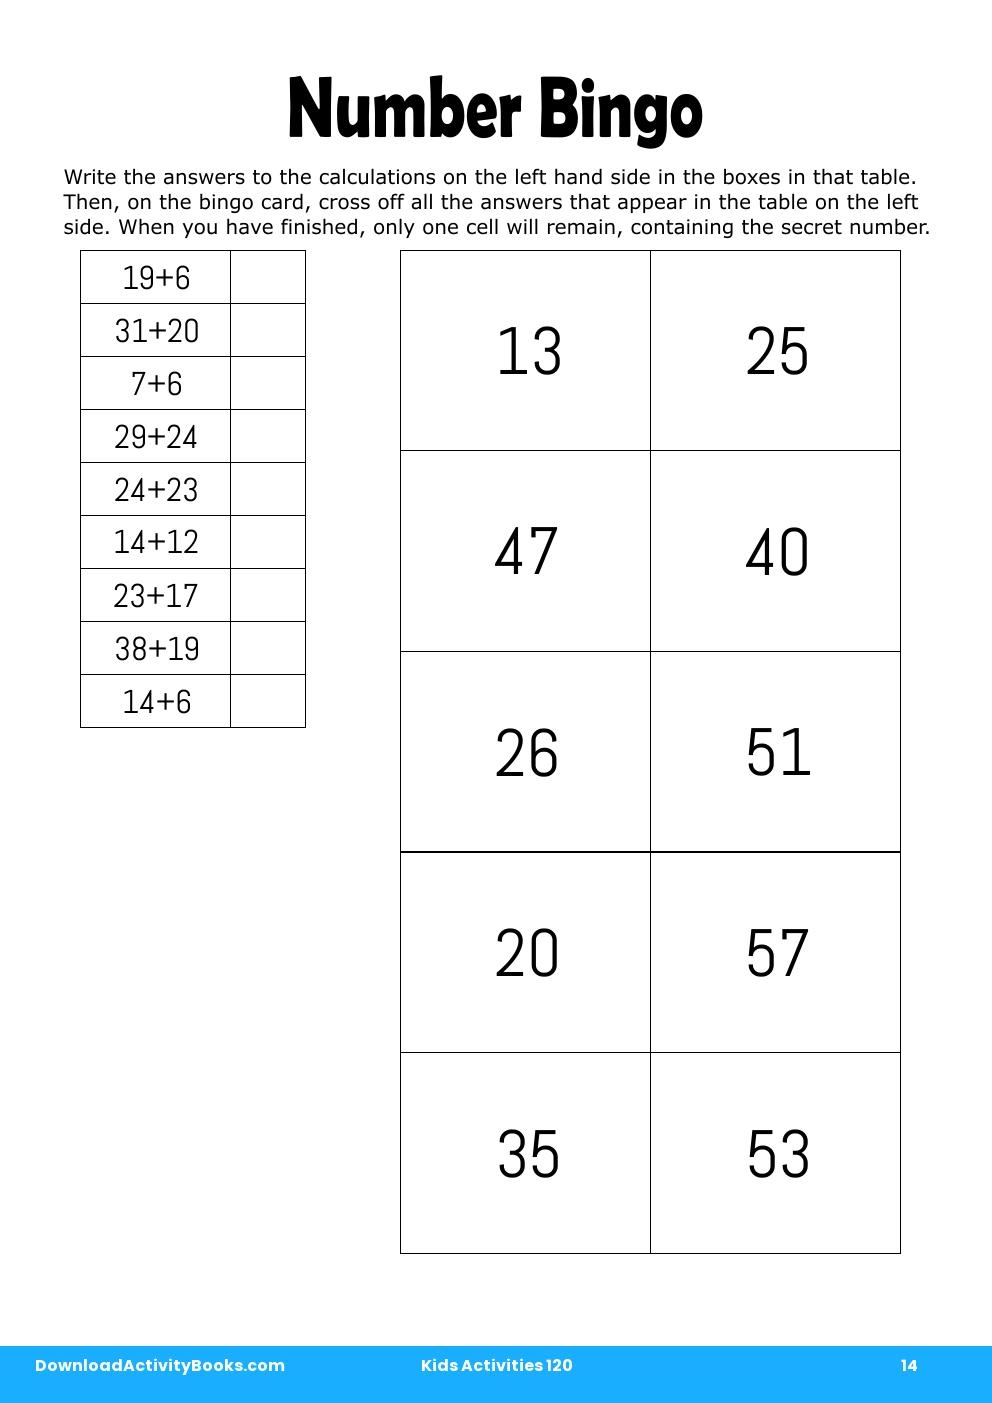 Number Bingo in Kids Activities 120